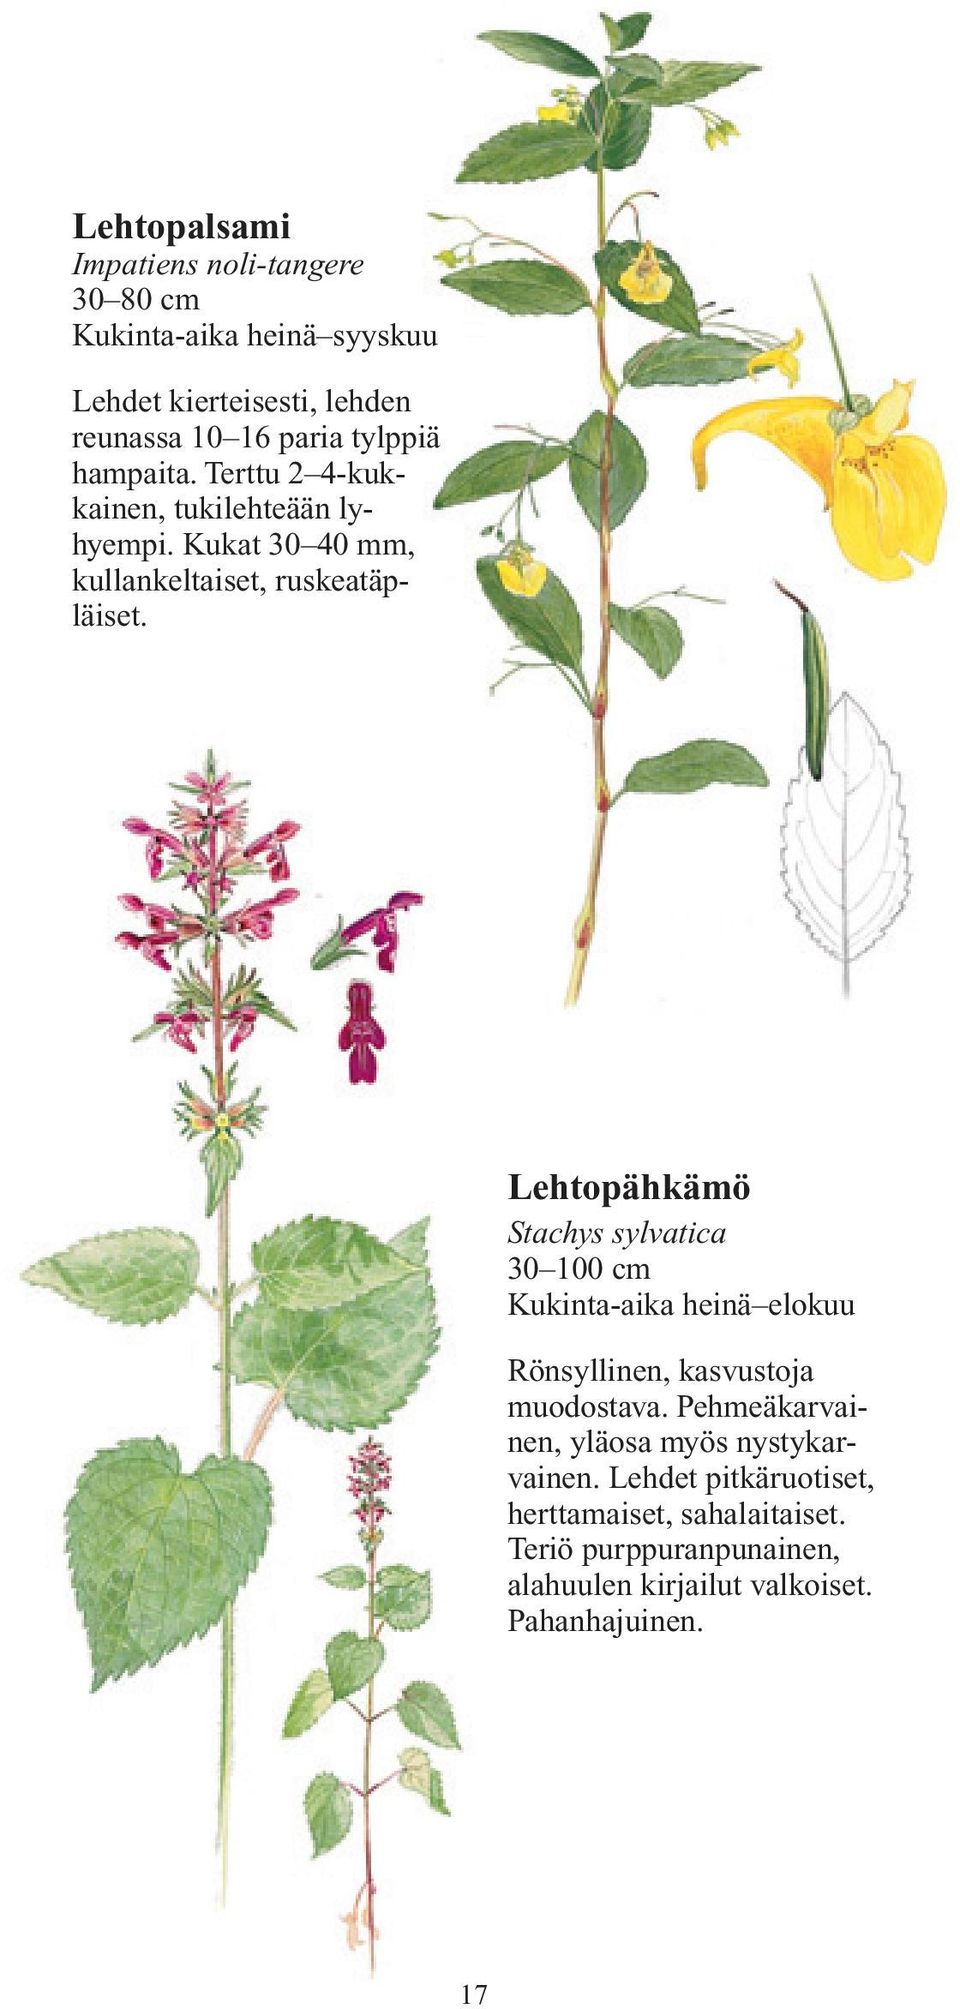 Lehtopähkämö Stachys sylvatica 30 100 cm Kukinta-aika heinä elokuu Rönsyllinen, kasvustoja muodostava.